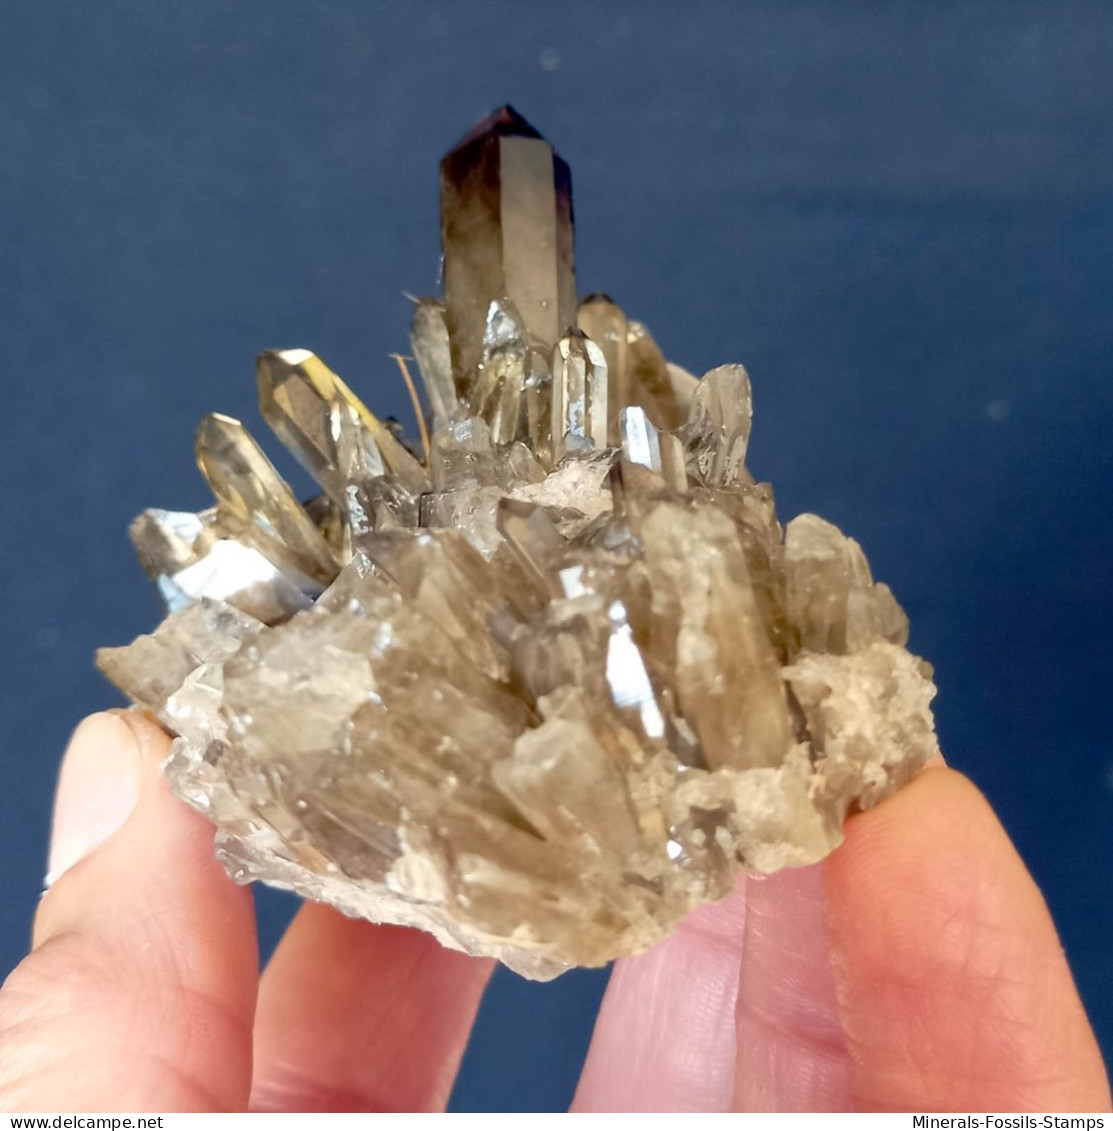 #07 – SCHÖNE MORIONE QUARZ Kristalle (Kara-Oba, Moiynkum, Jambyl, Kasachstan) - Mineralien